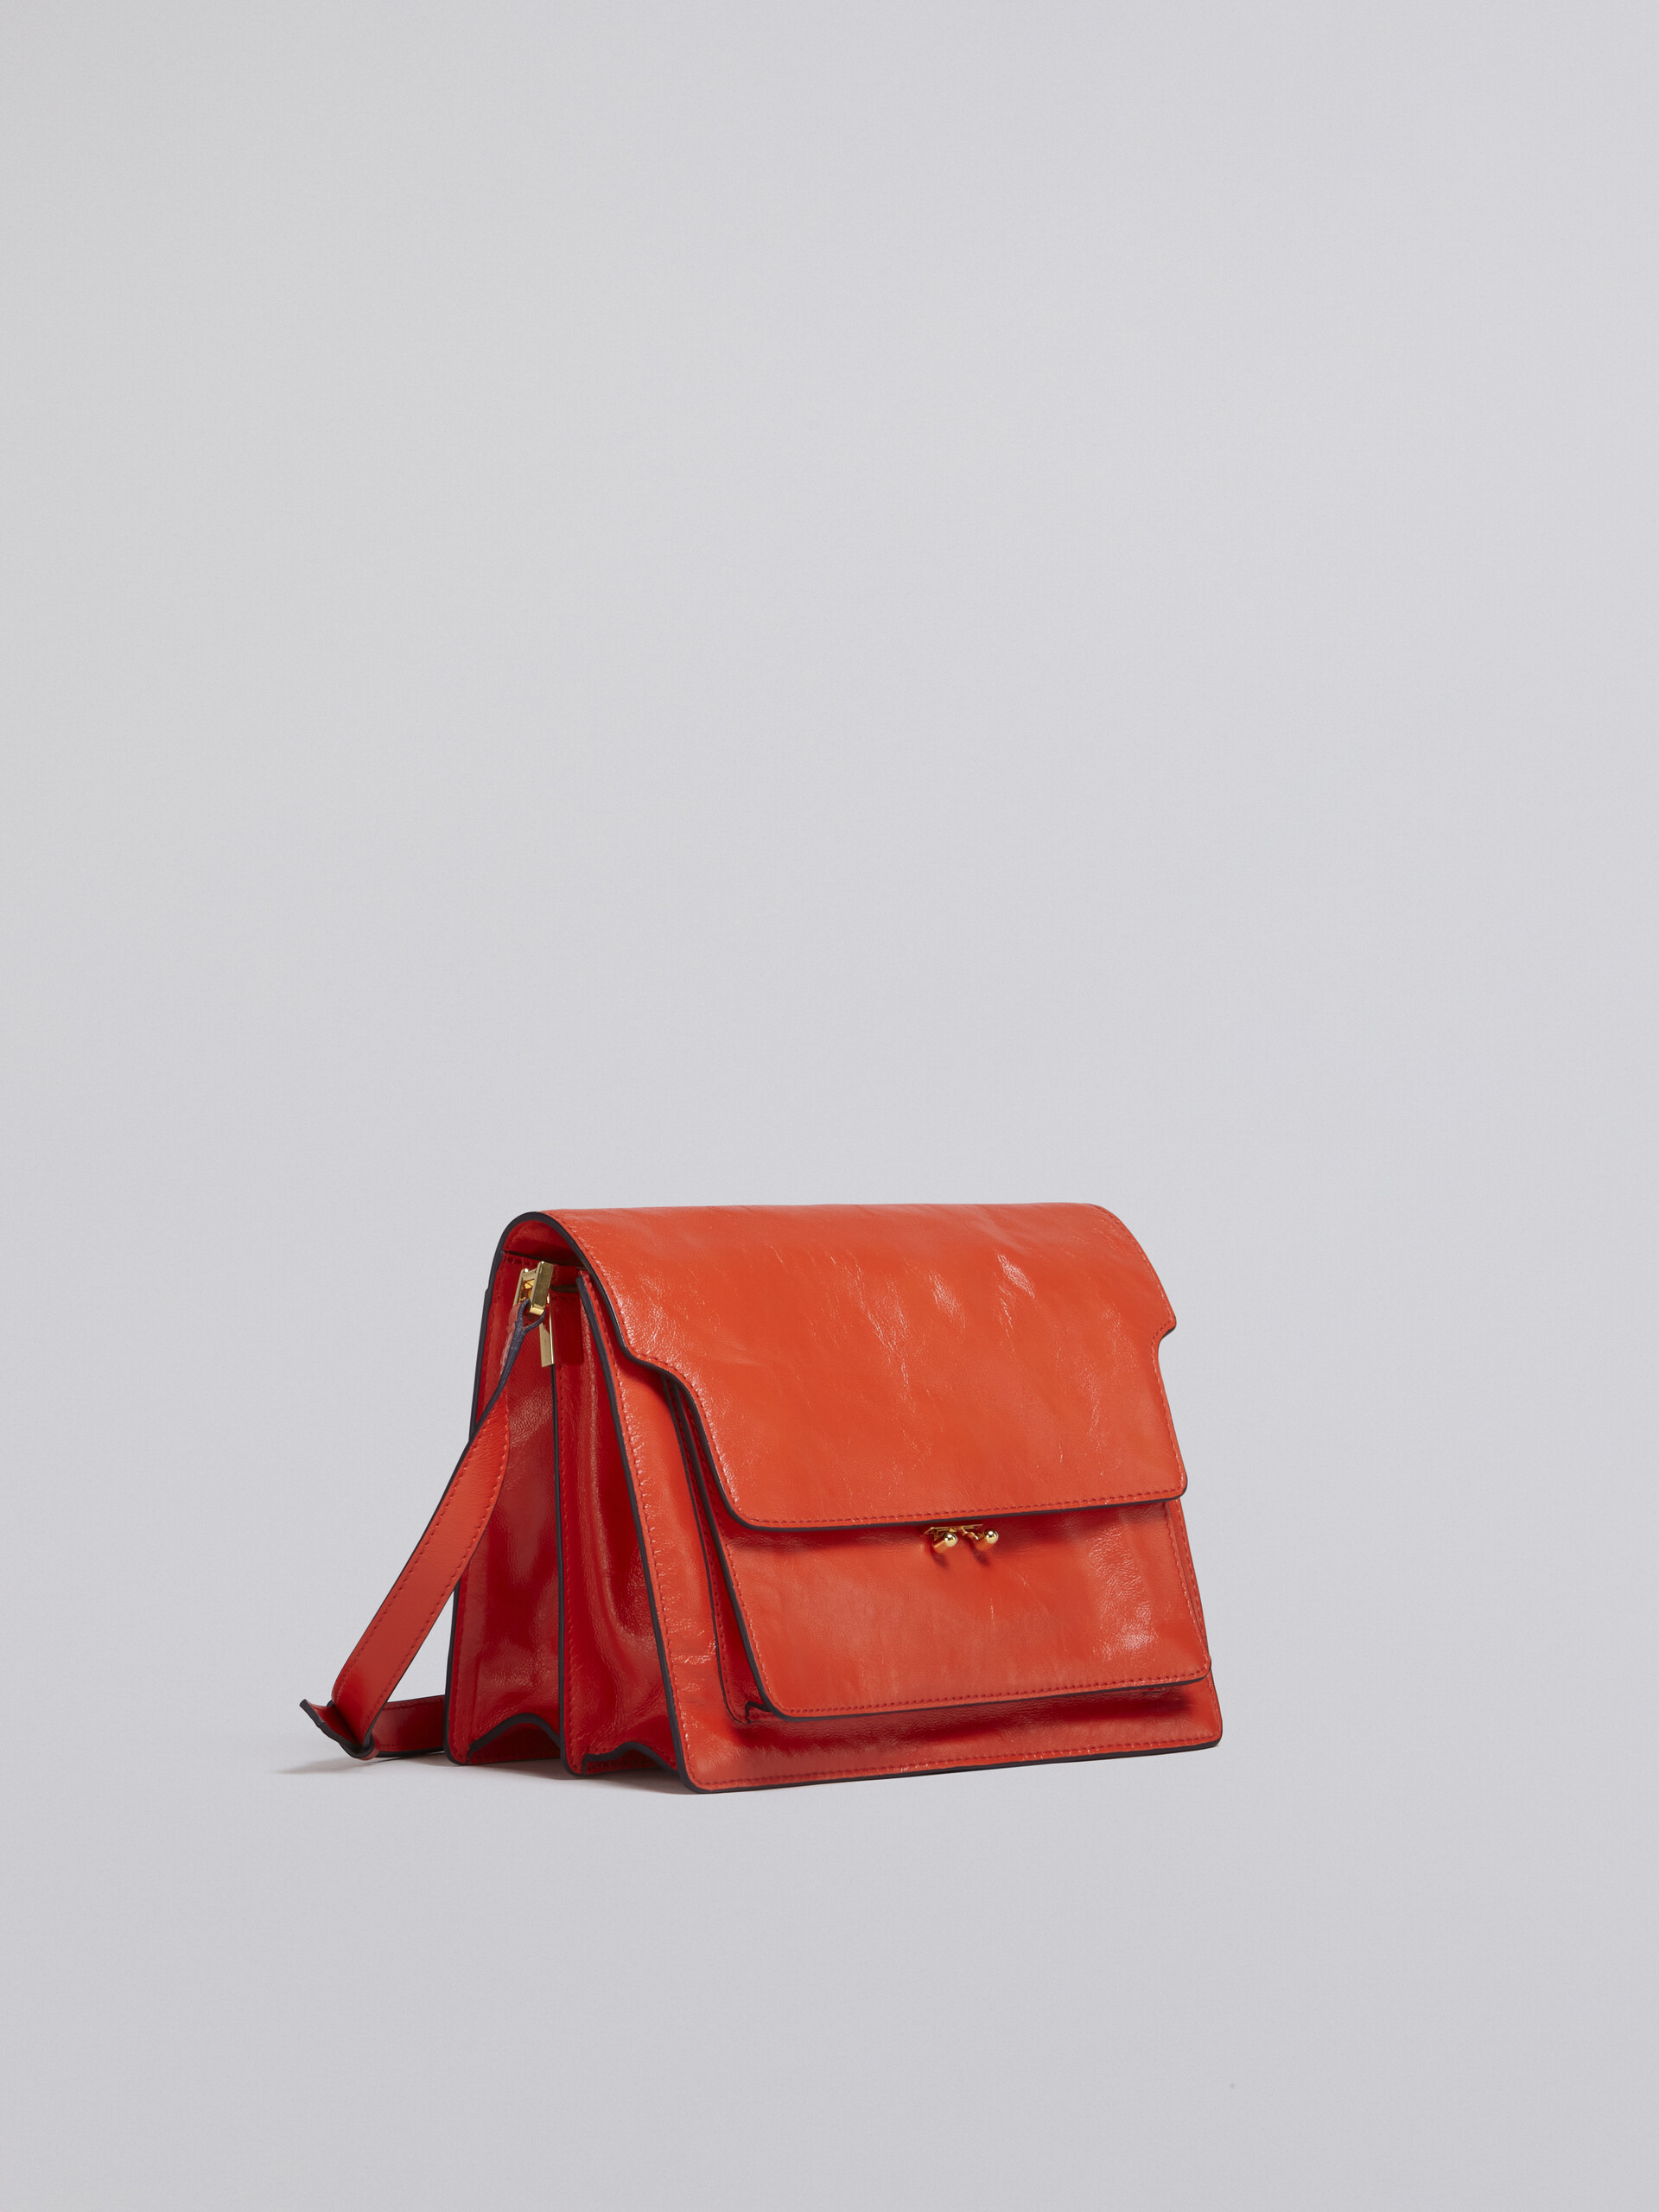 TRUNK SOFT large bag in orange leather - Shoulder Bag - Image 5